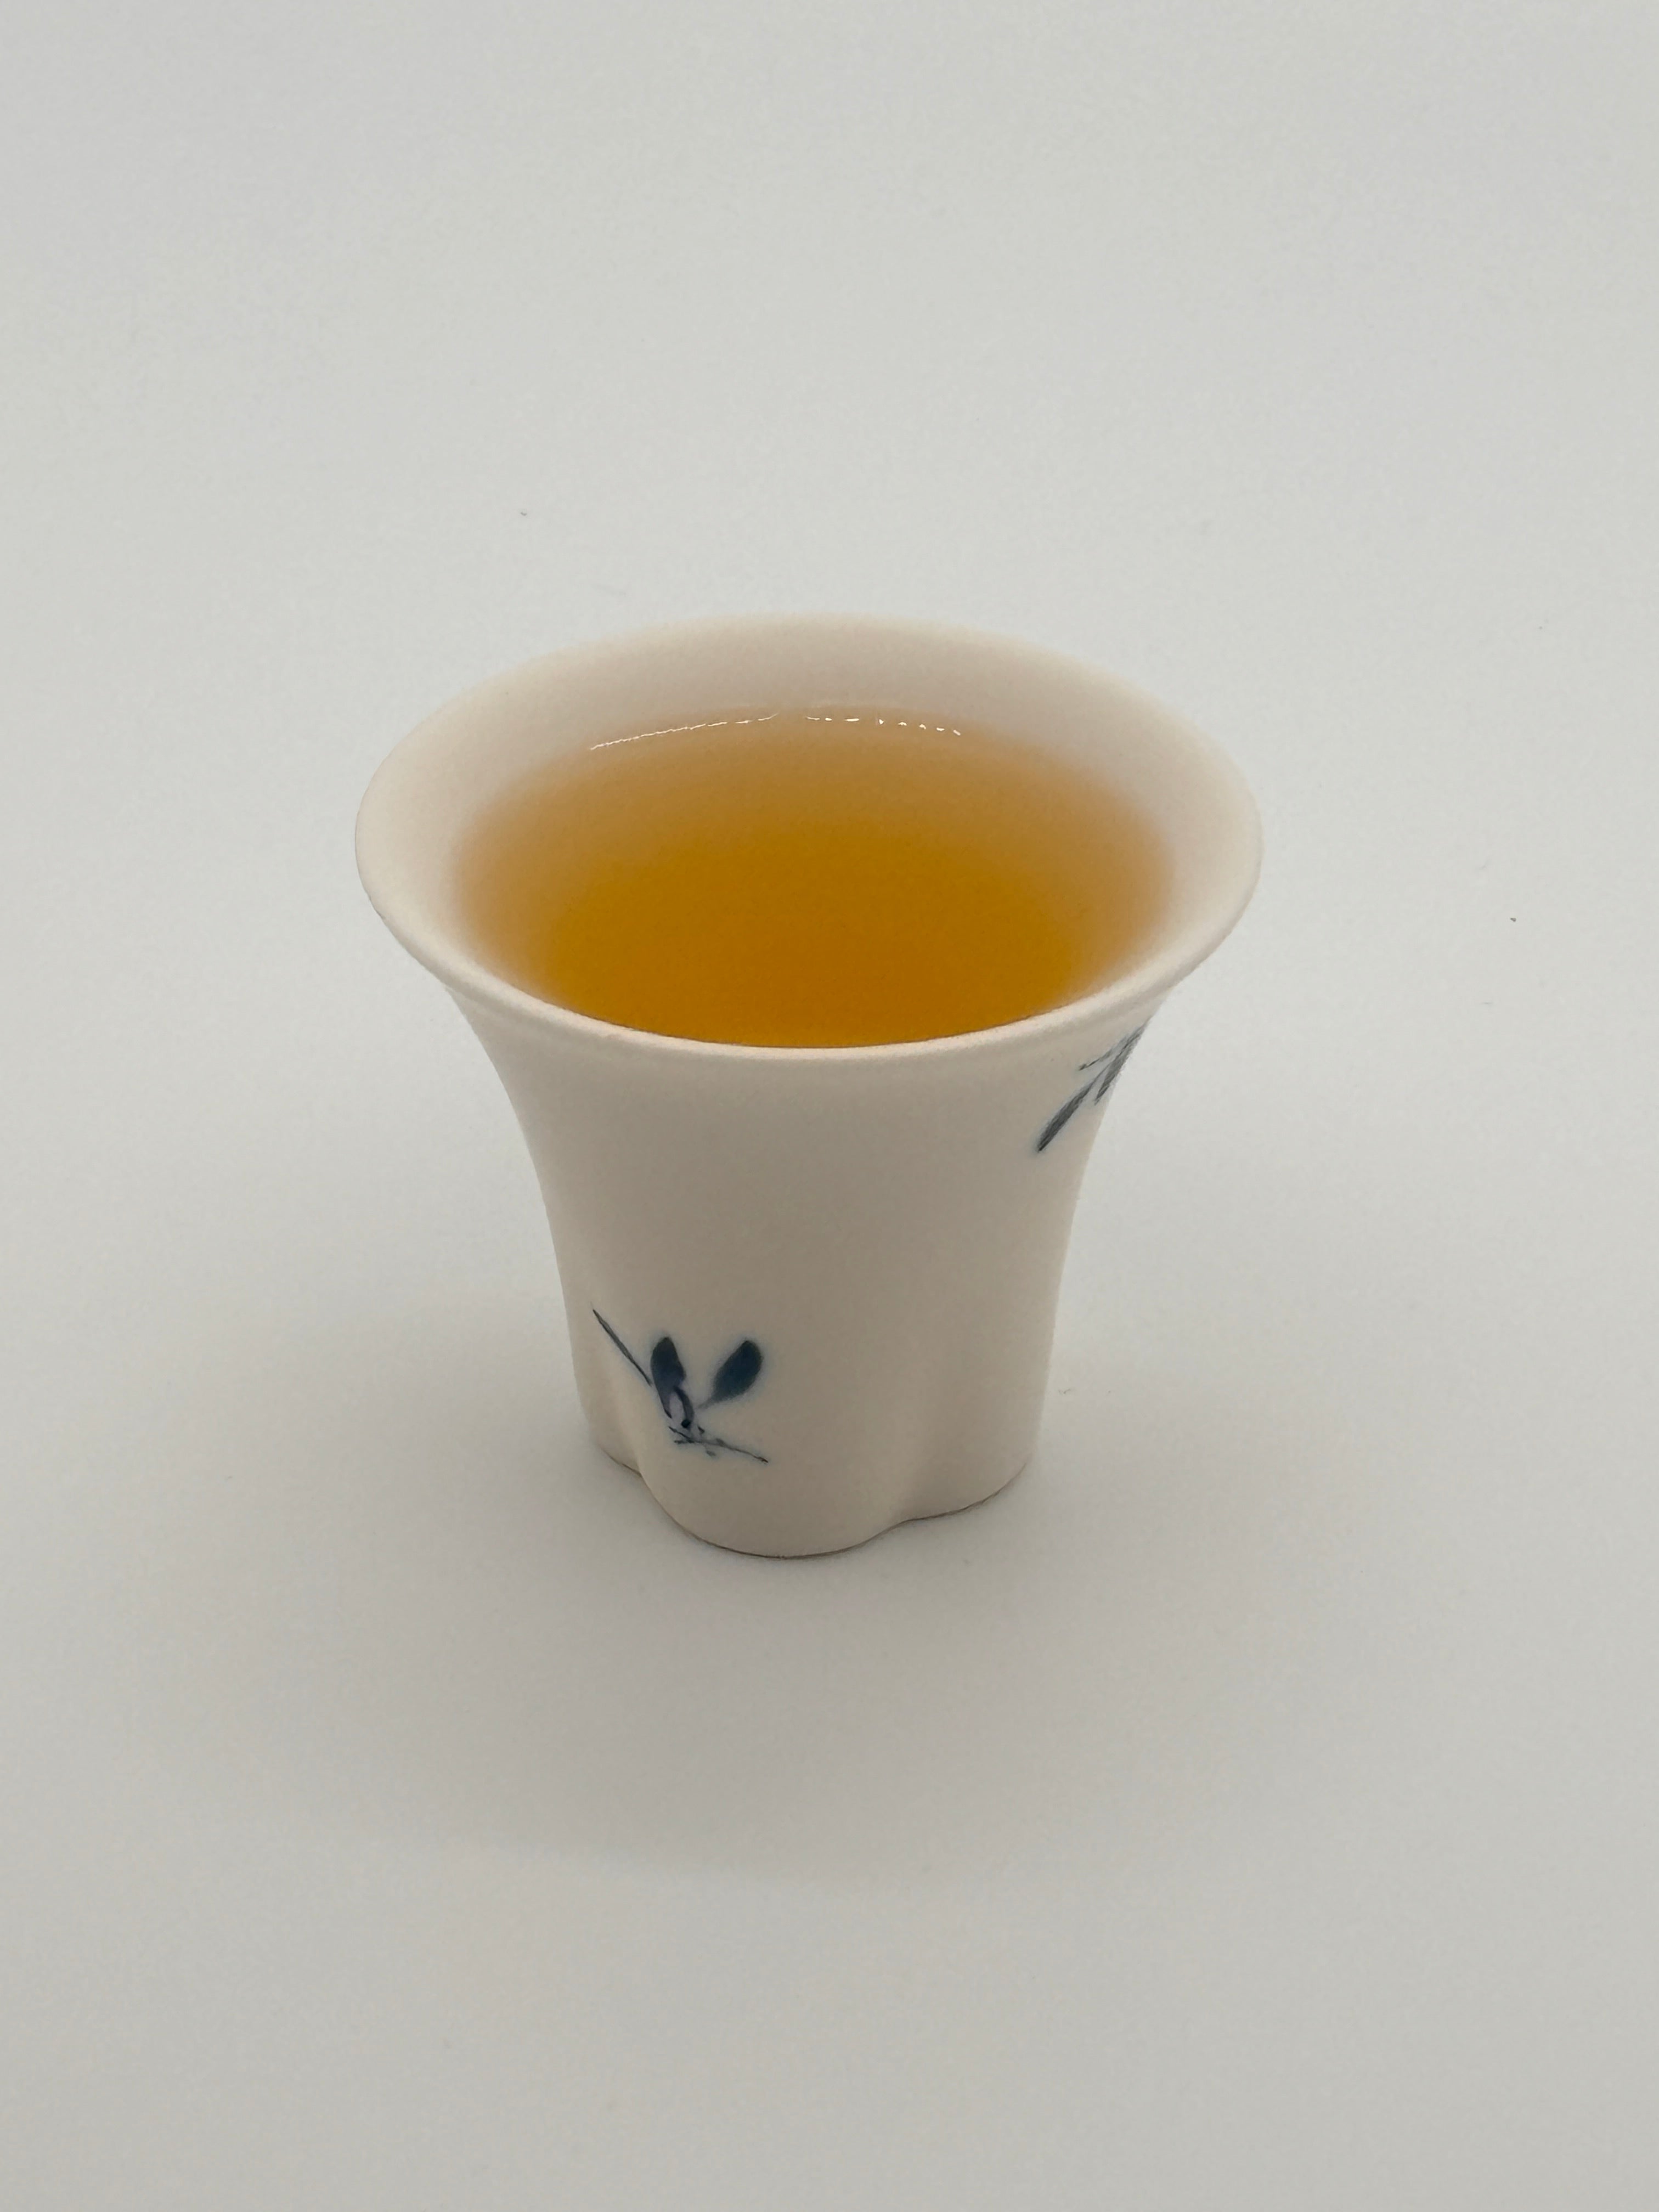 Long Jing Green Tea